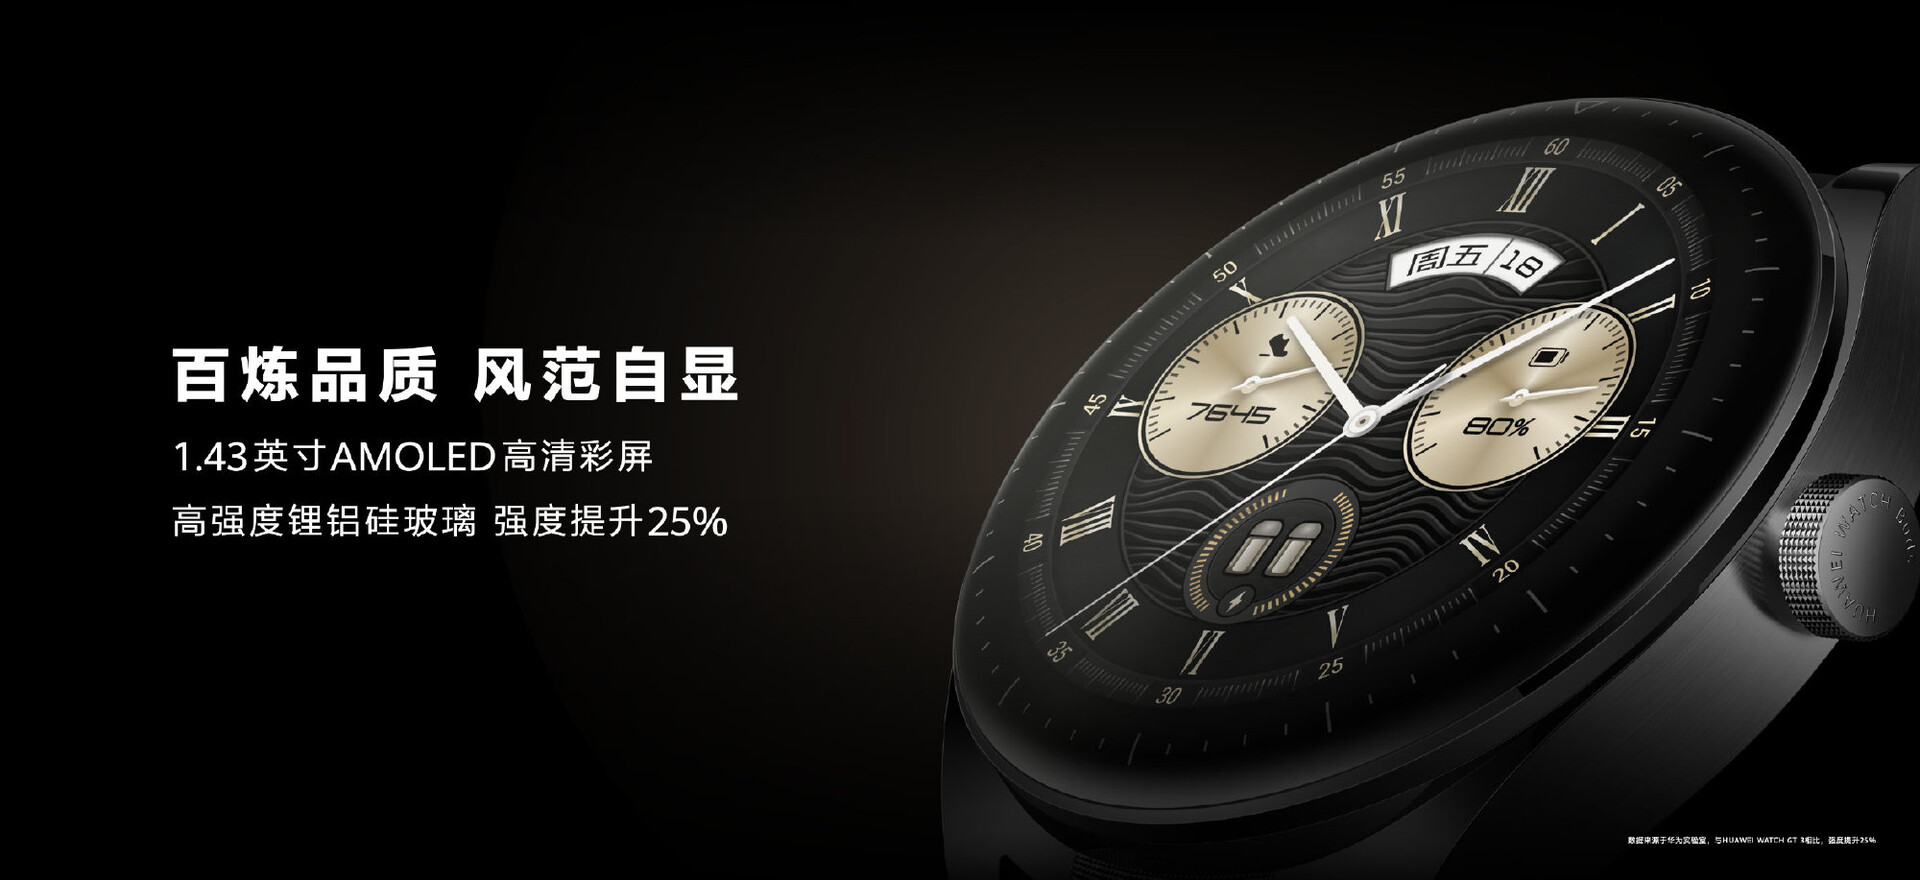 vorgestellt: Smartwatch schicker verstaut Notebookcheck.com mit Ohrhörer Buds Watch in AMOLED-Display - Huawei News aufklappbarem Huawei